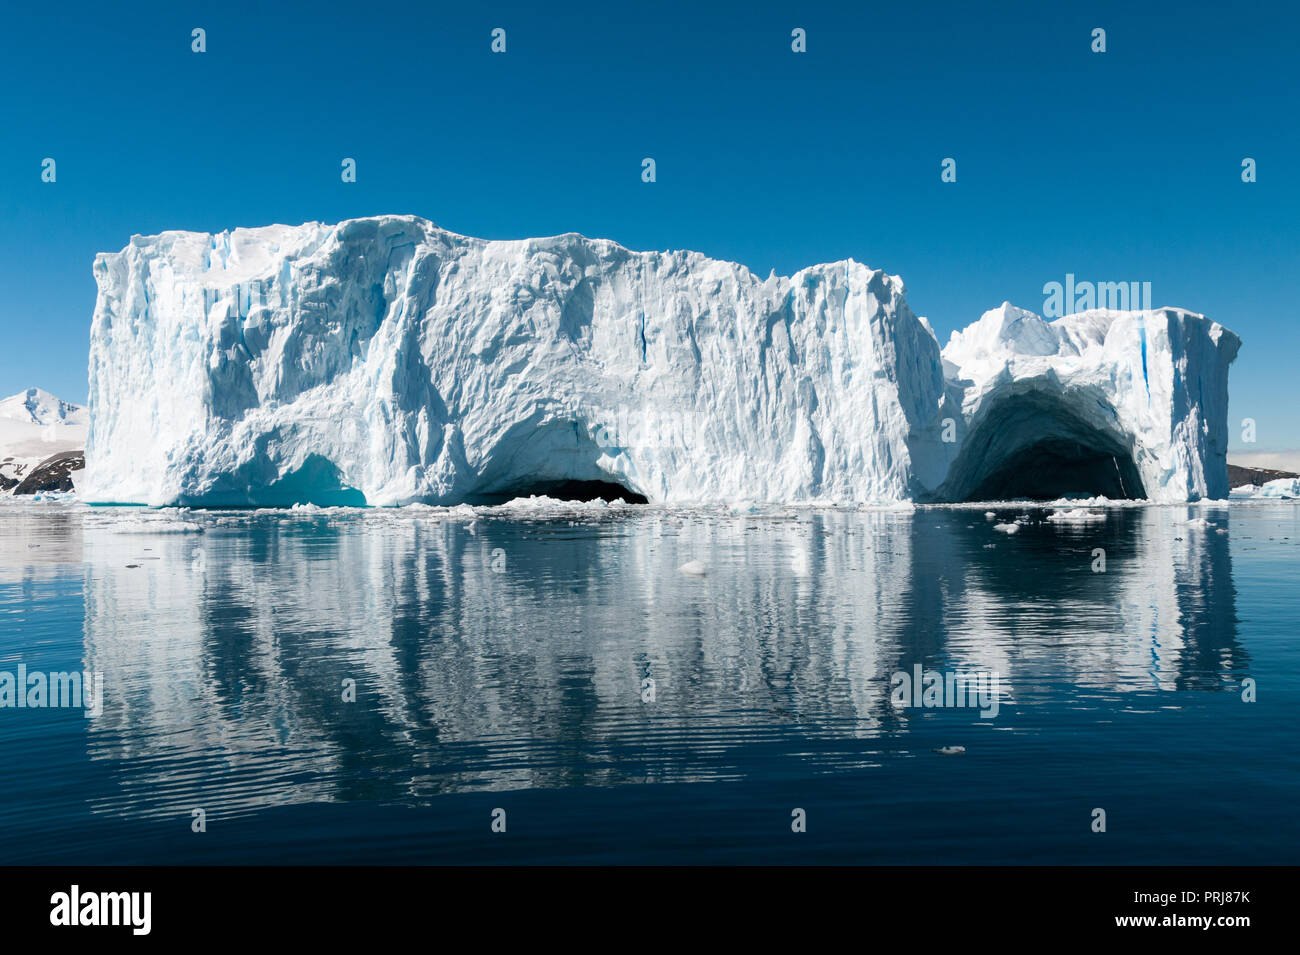 Gran iceberg erosionado con cuevas se refleja en el agua, vidriosas Cierva Cove, Península Antártica. Foto de stock